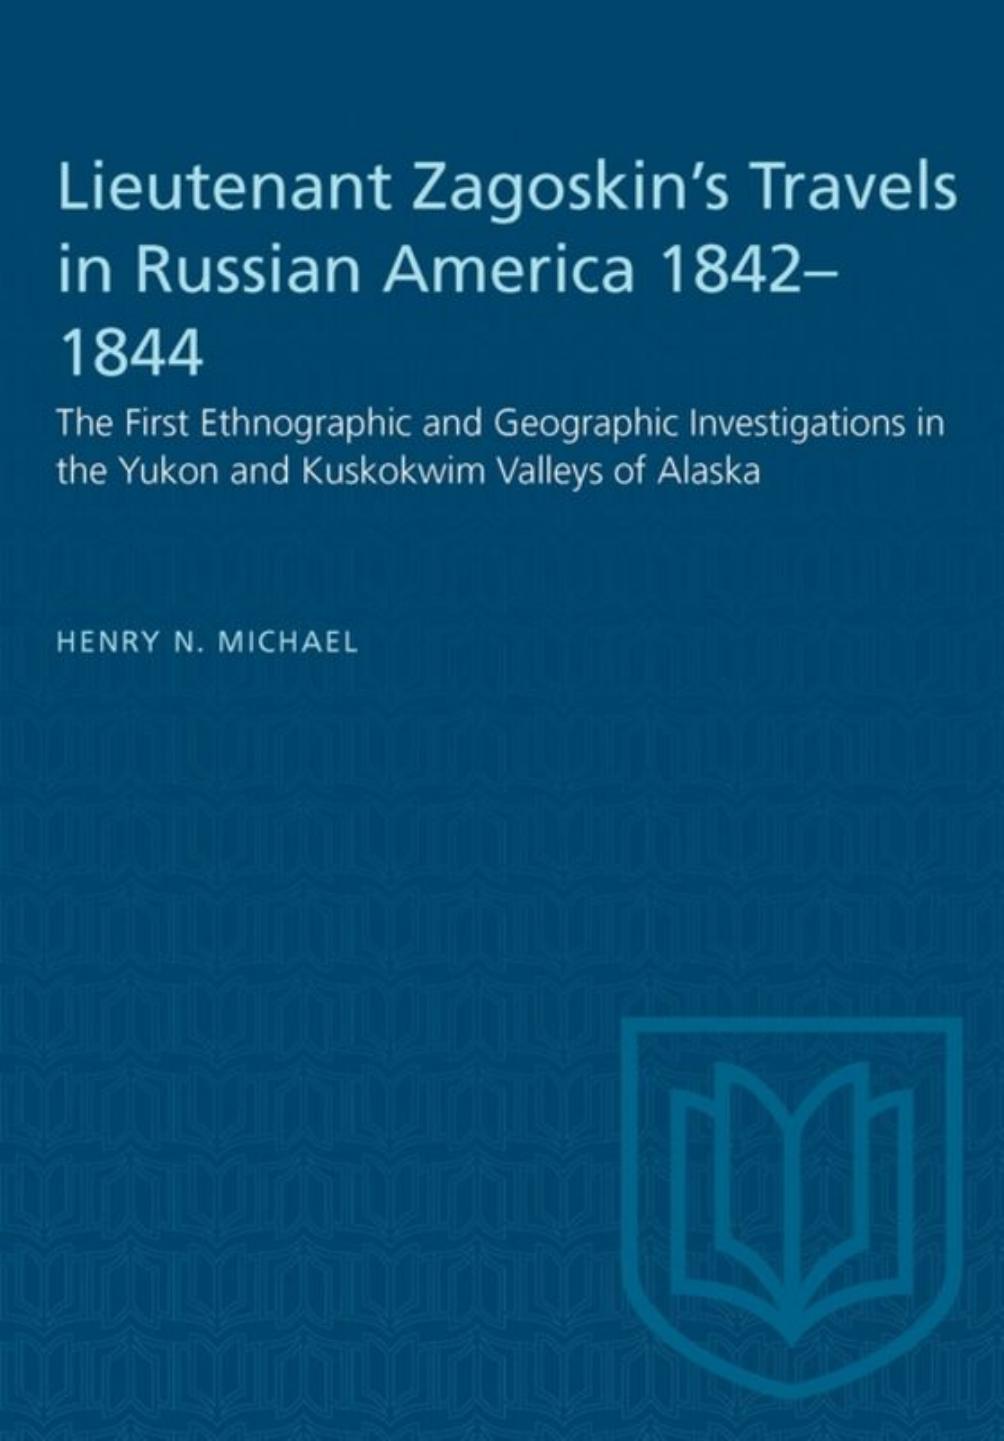 Lieutenant Zagoskin's Travels in Russian America 1842â1844: The First Ethnographic and Geographic Investigations in the Yukon and Kuskokwim Valleys of Alaska by Henry N. Michael